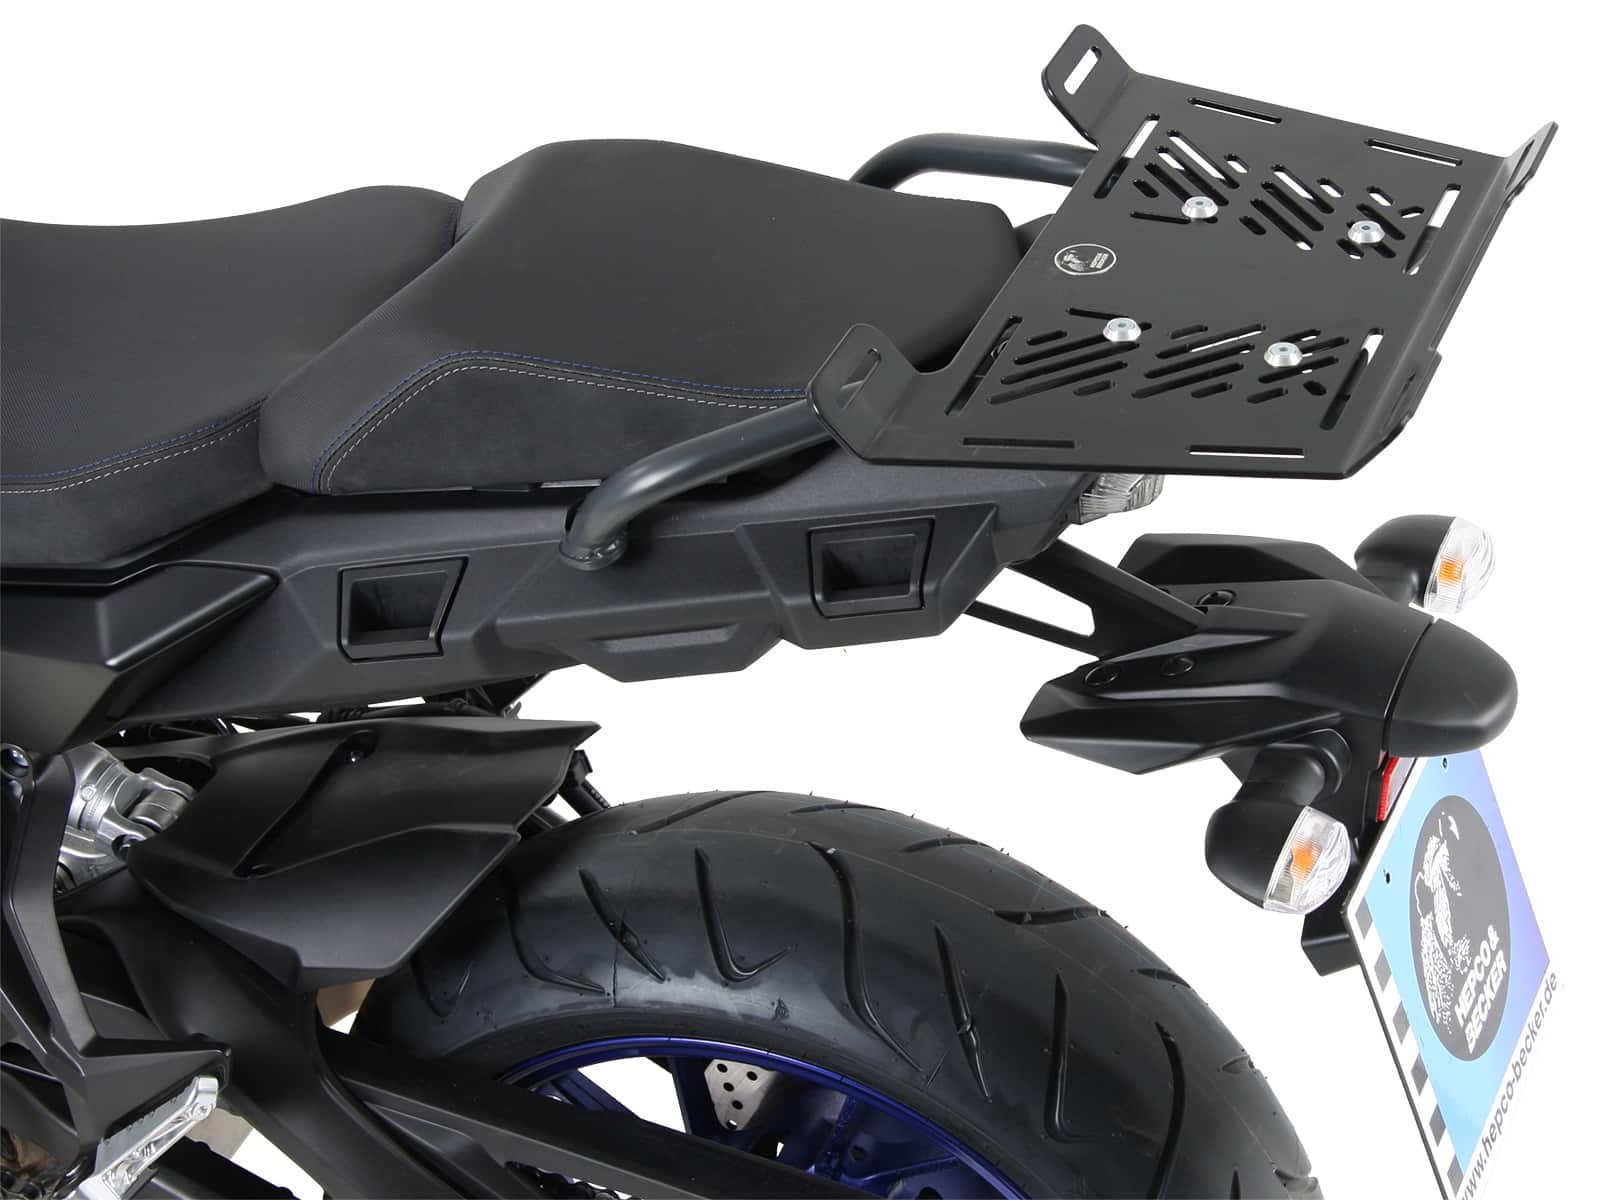 Modelspecific rear enlargement for Yamaha Tracer 900/GT (2018-2020)